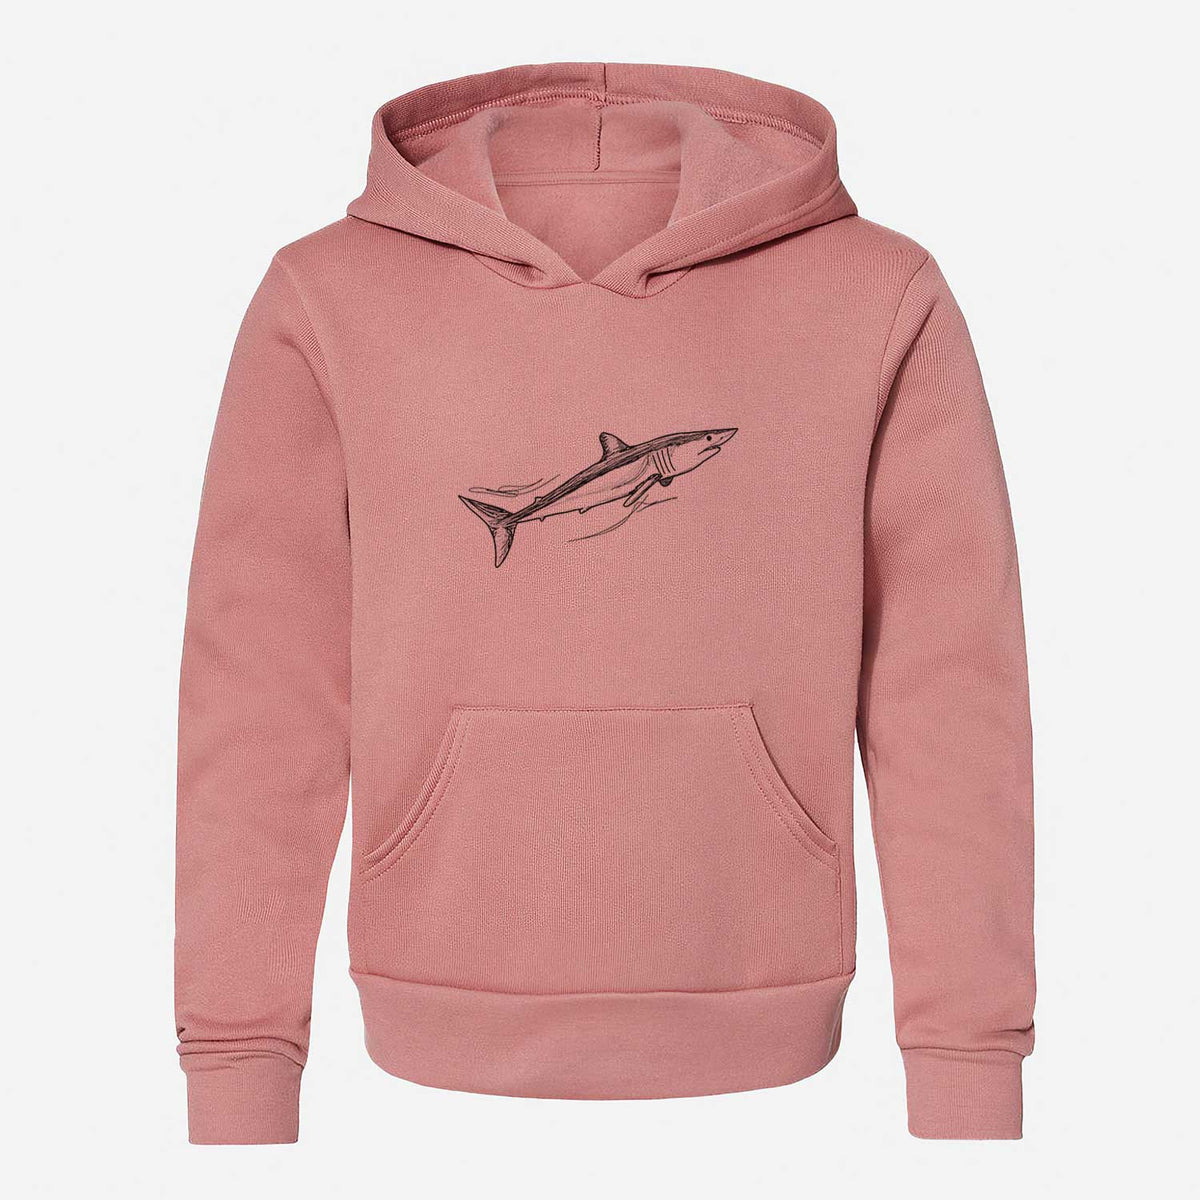 Mako Shark - Youth Hoodie Sweatshirt